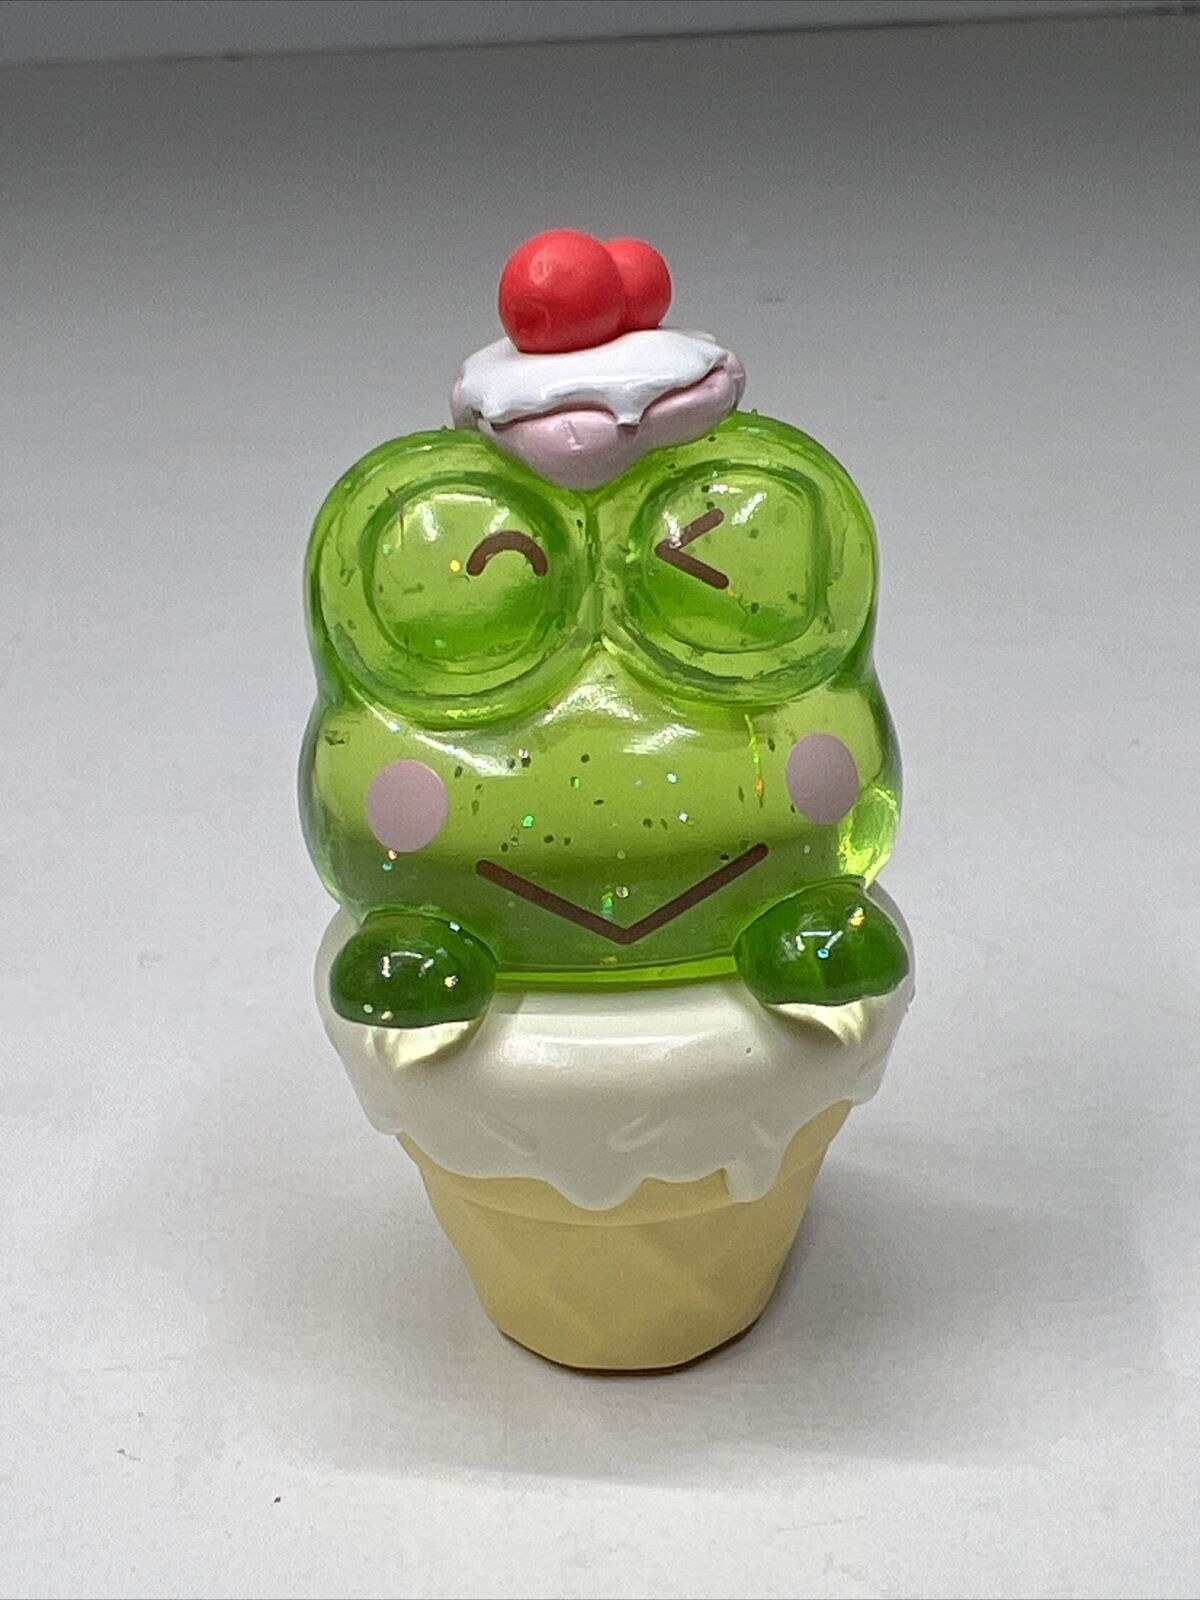 Sanrio Top Toy Keroppi Gem Variant Ice Cream Cone 1.5” Figure New